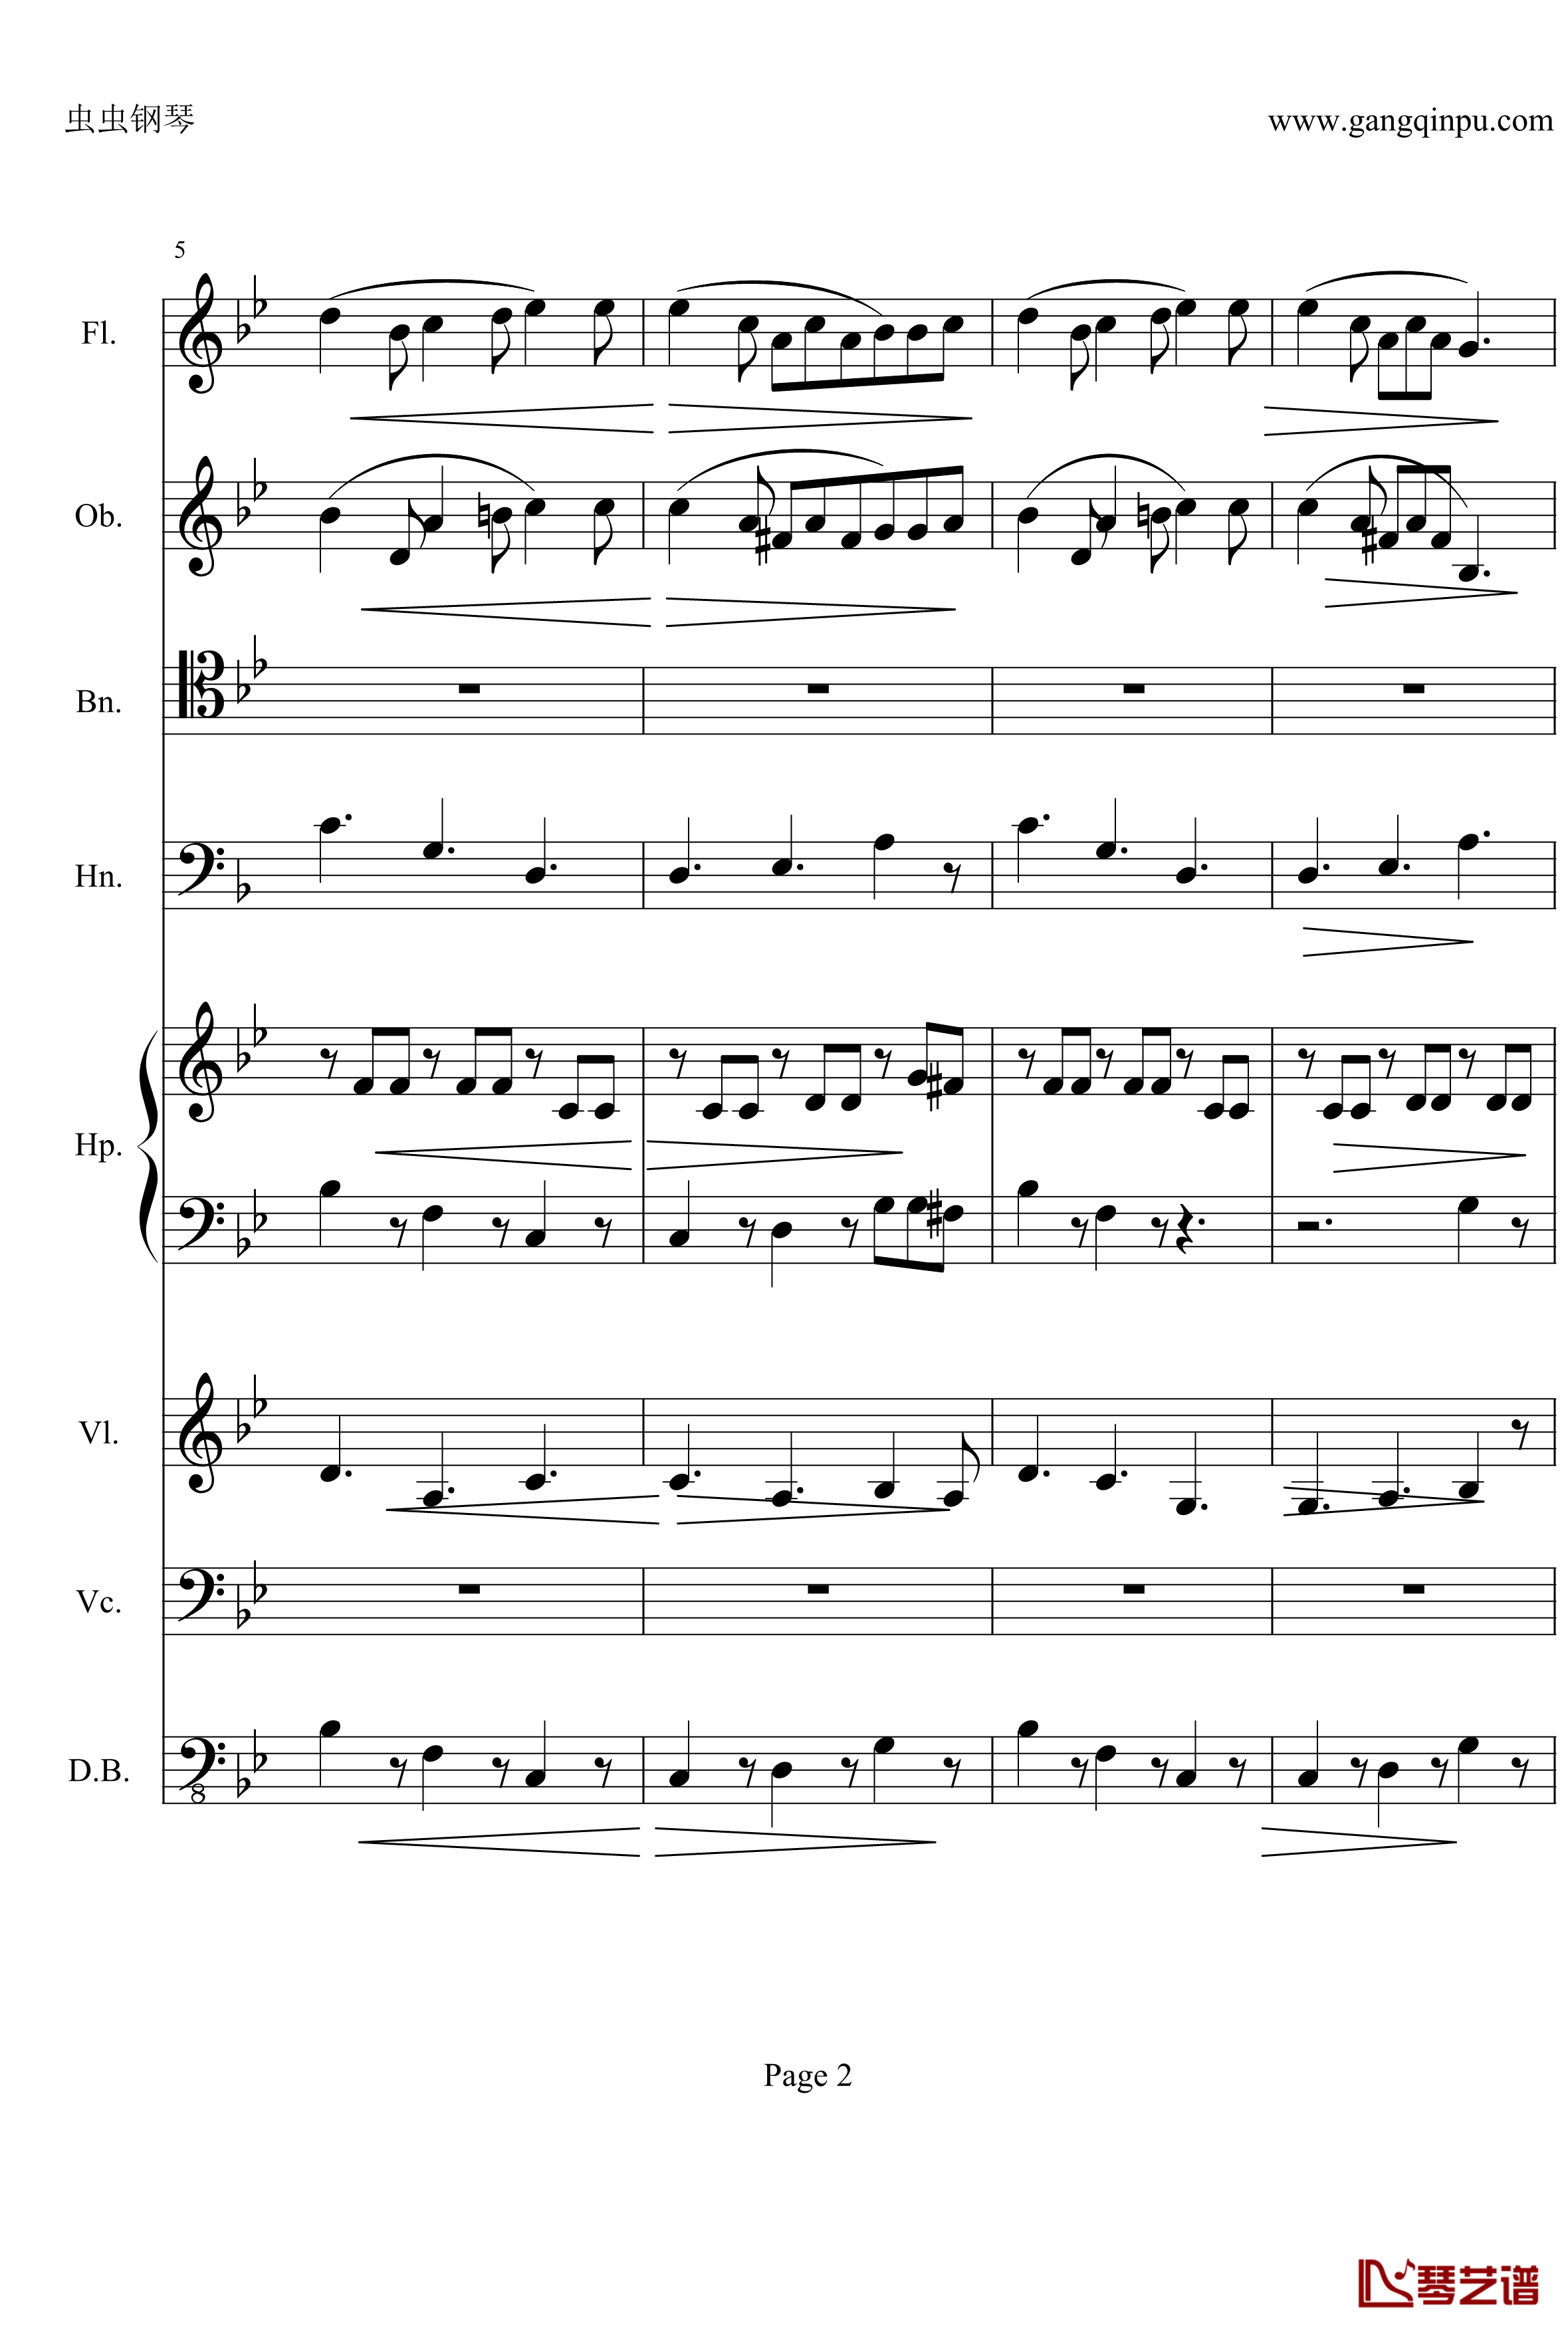 奏鸣曲之交响钢琴谱-第25首-Ⅱ-贝多芬-beethoven2